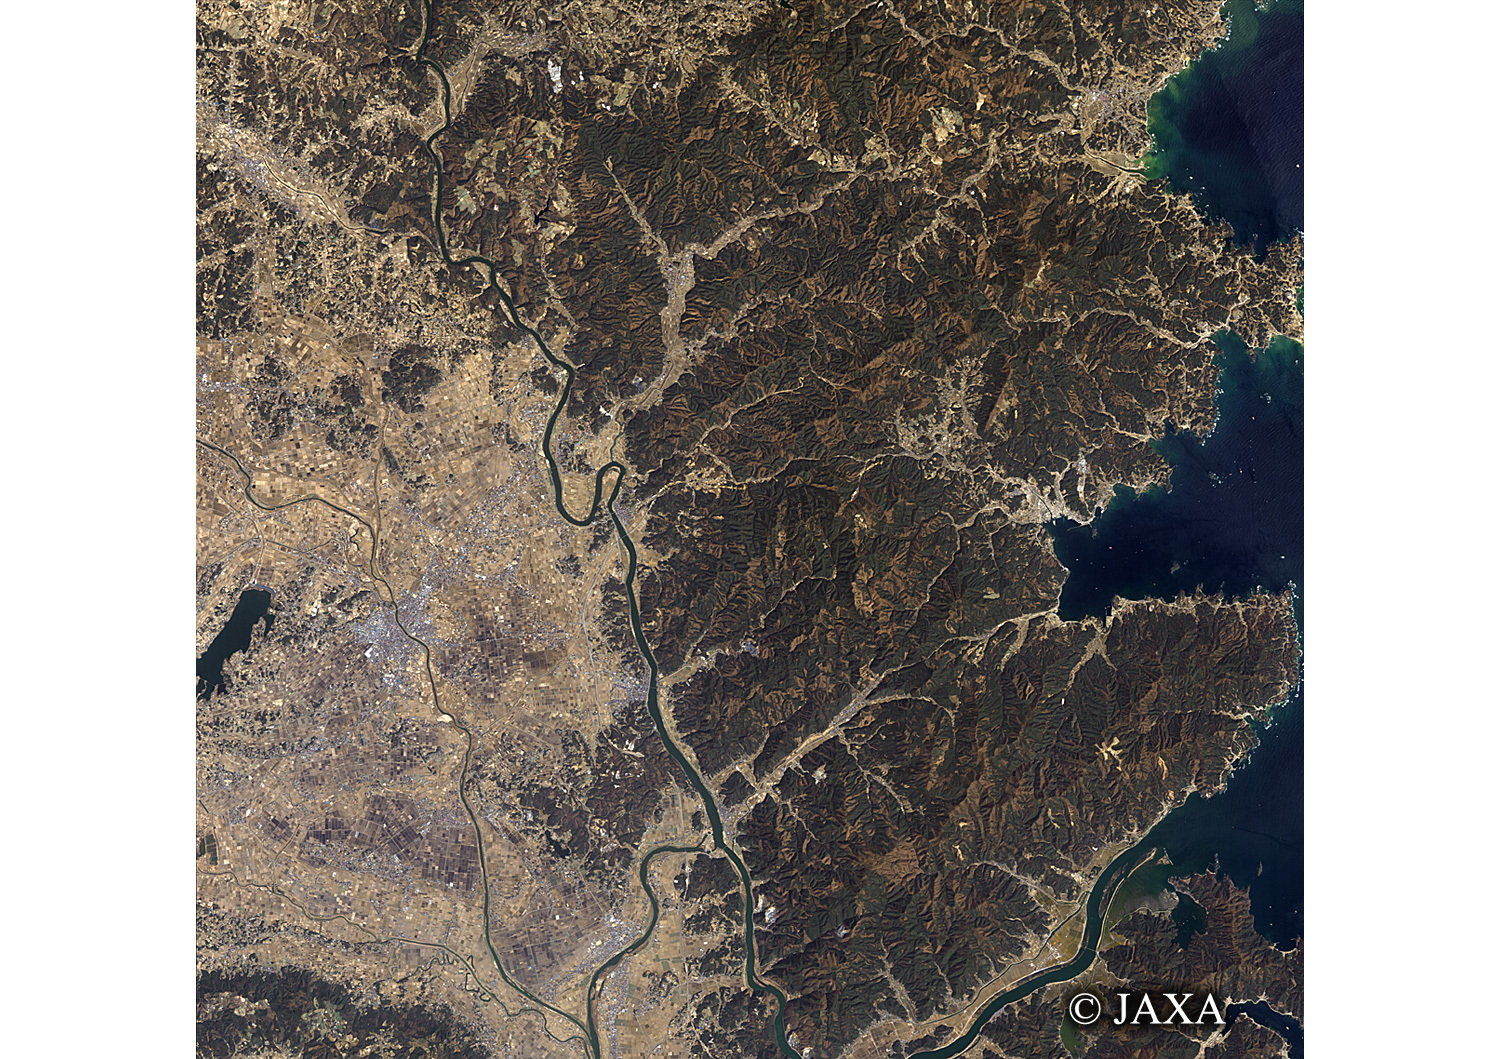 だいちから見た日本の都市 震災後の南三陸町:衛星画像